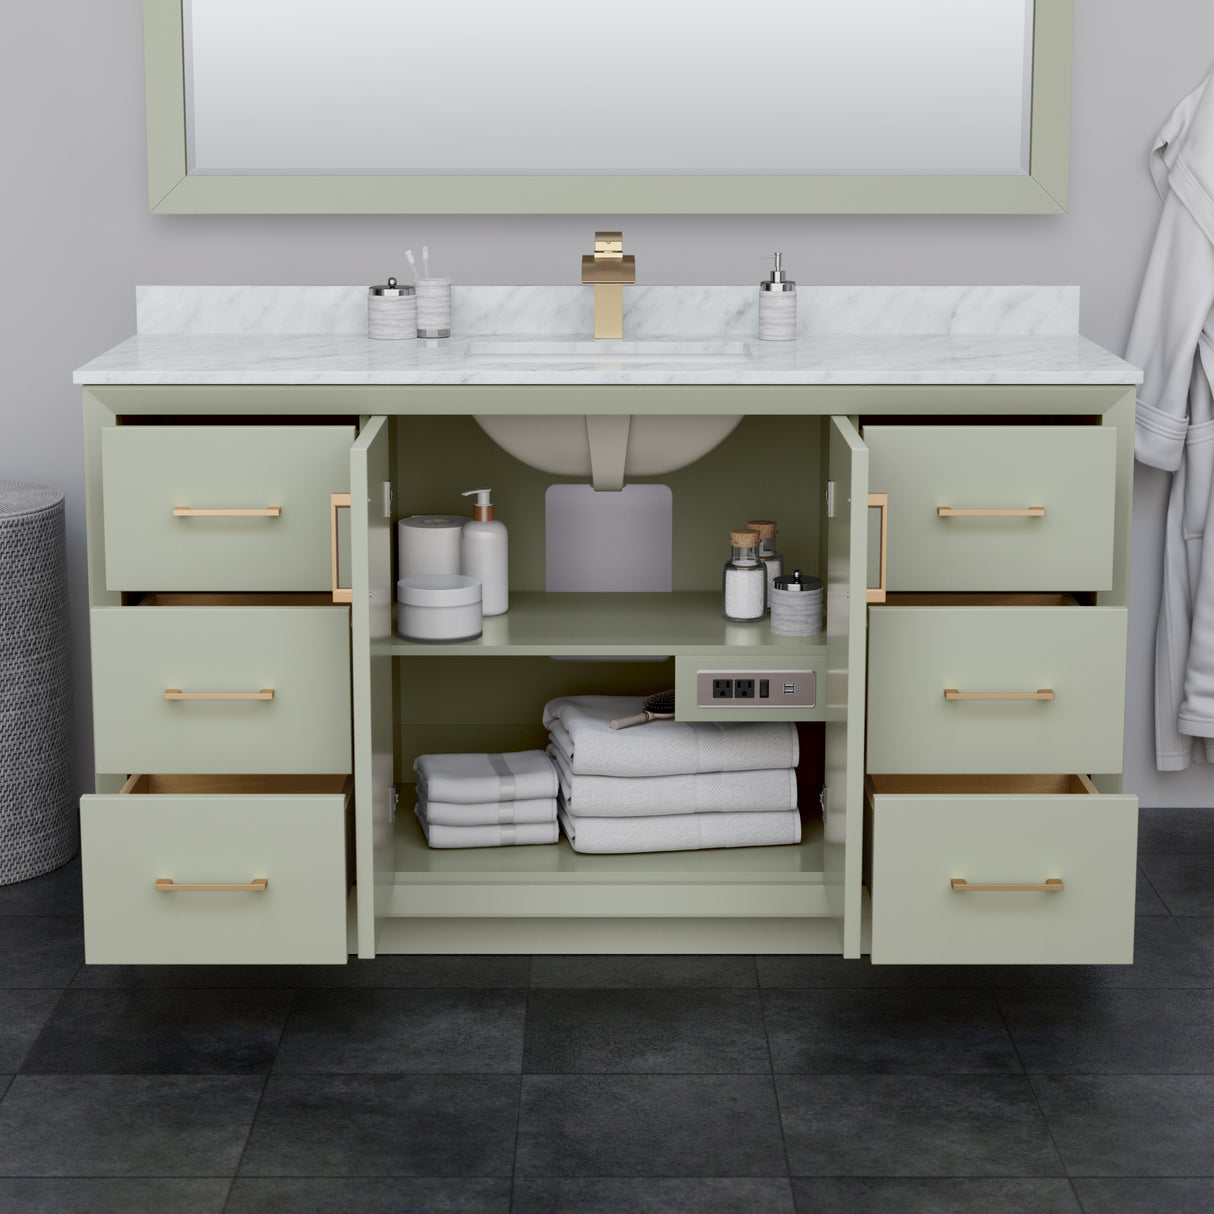 Strada 60 Inch Single Bathroom Vanity in Light Green No Countertop No Sink Matte Black Trim 58 Inch Mirror